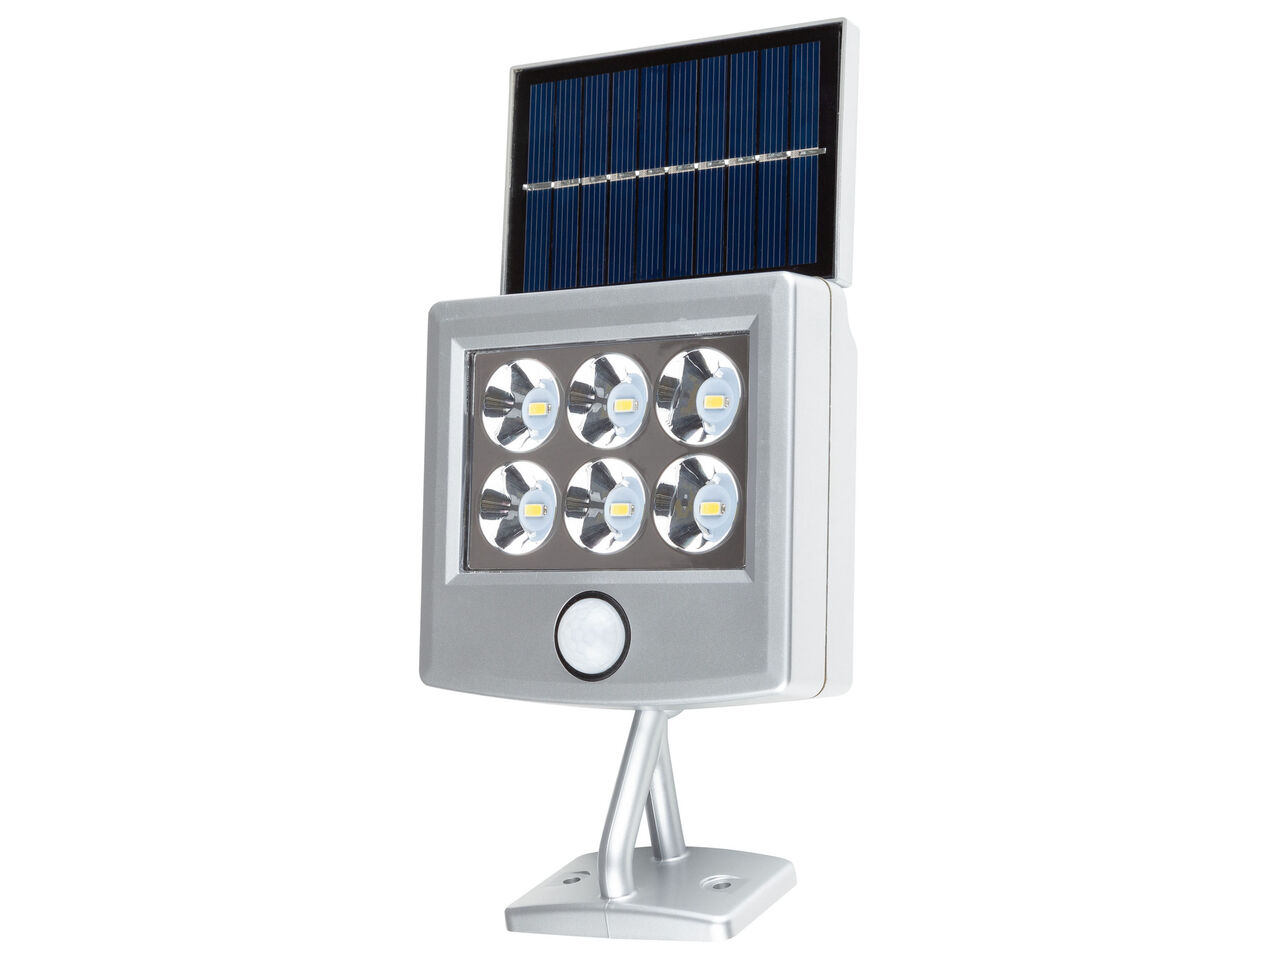 LIVARNO HOME® Reflektor solarny LED z czujnikiem , cena 39,99 PLN 

- w zestawie: ...